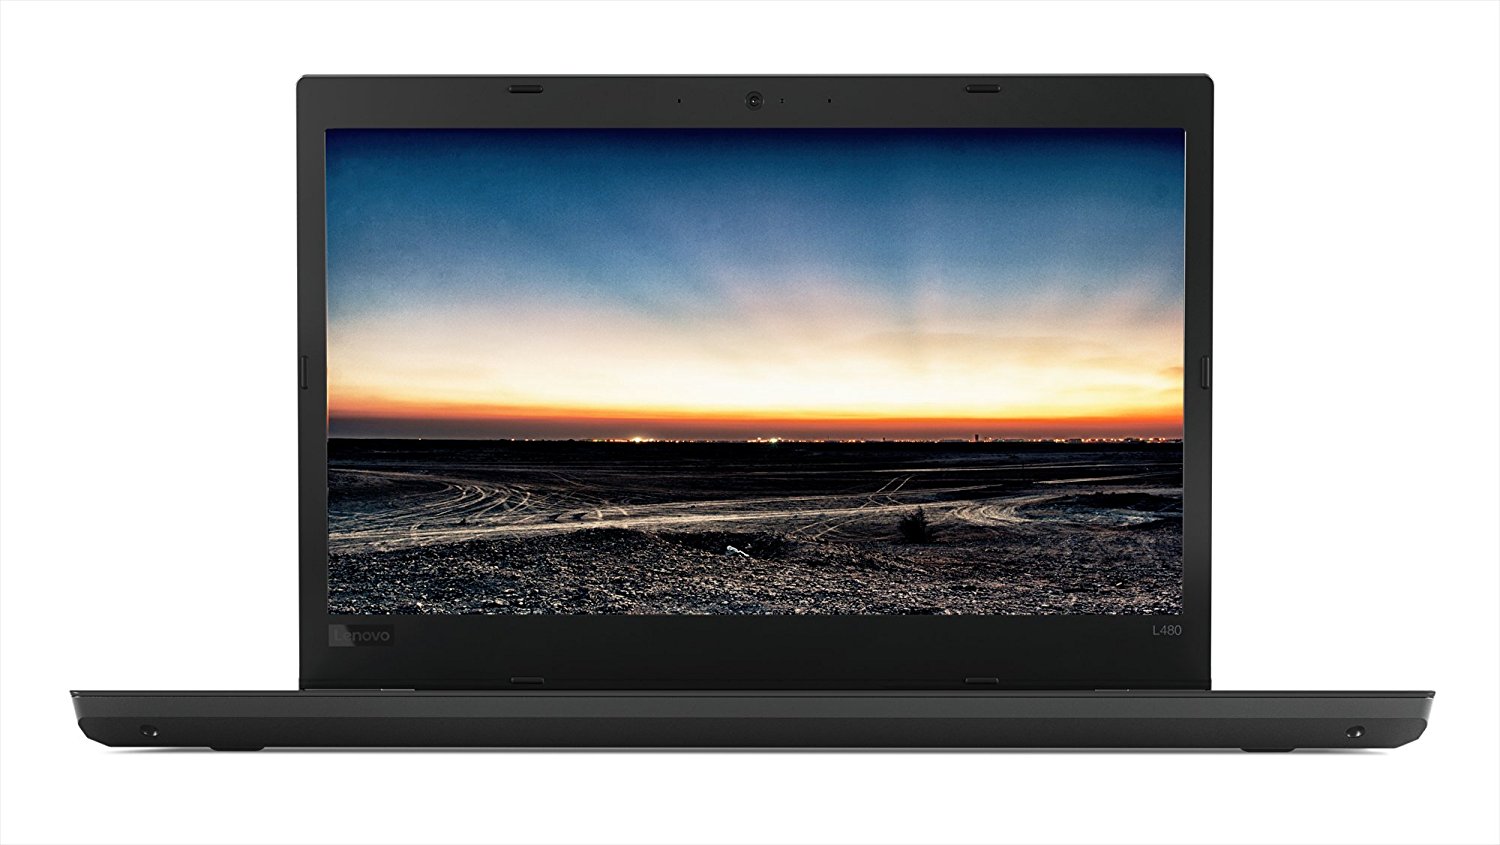 Notebook Lenovo ThinkPad L480 14 Full HD Intel Core i5-8250U RAM 8GB SSD 256GB Windows 10 Pro Negru